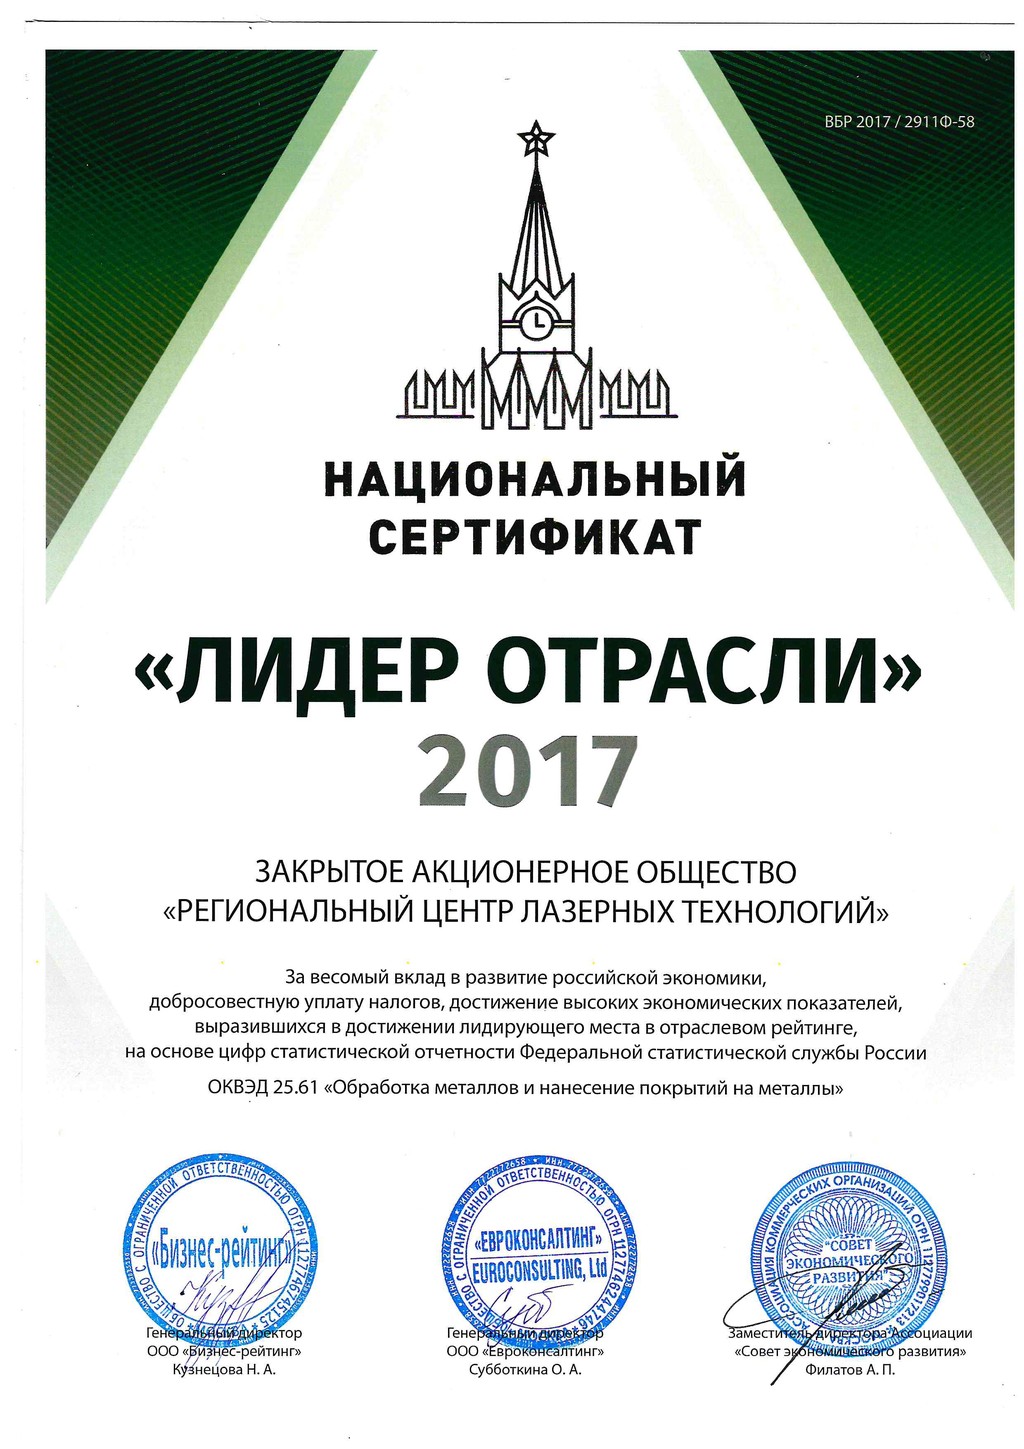 Сертификат «Лидер отрасли» вручен ЗАО «Региональный центр лазерных технологий»